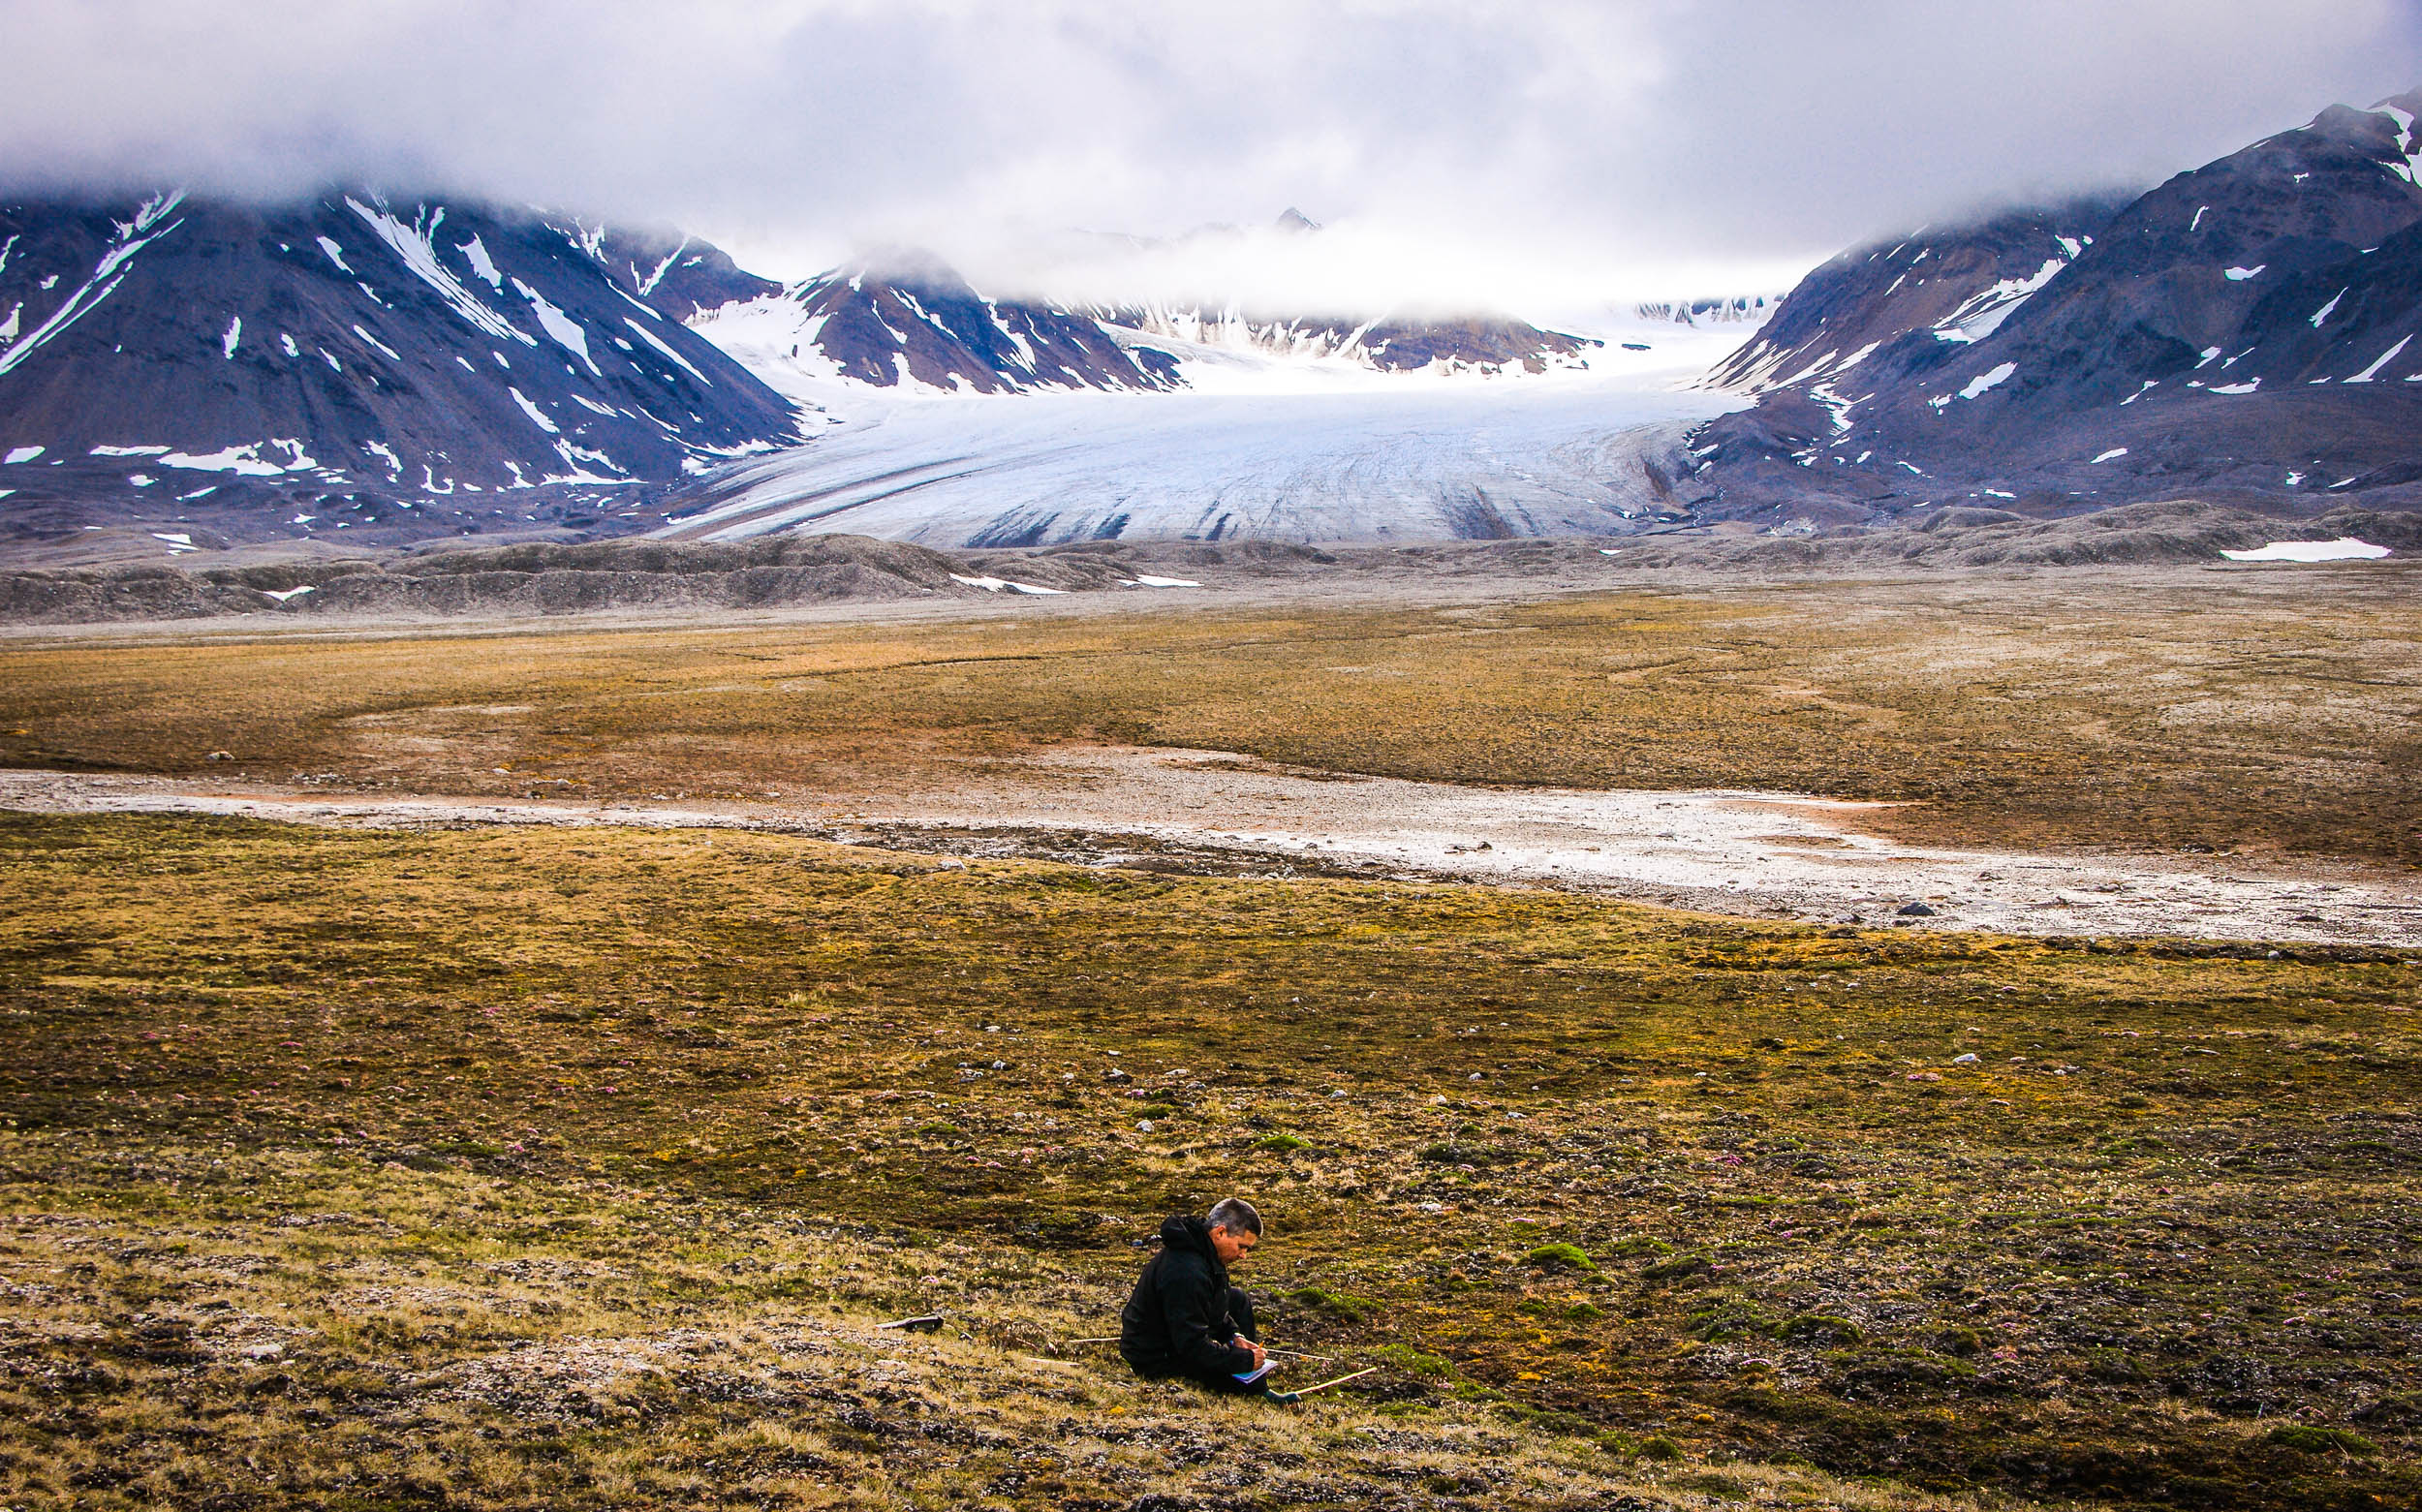 Jarle W. Bjerke doing research work with Vestre Brøggerbreen glacier in the background.  JONAA©Trond Johnsen